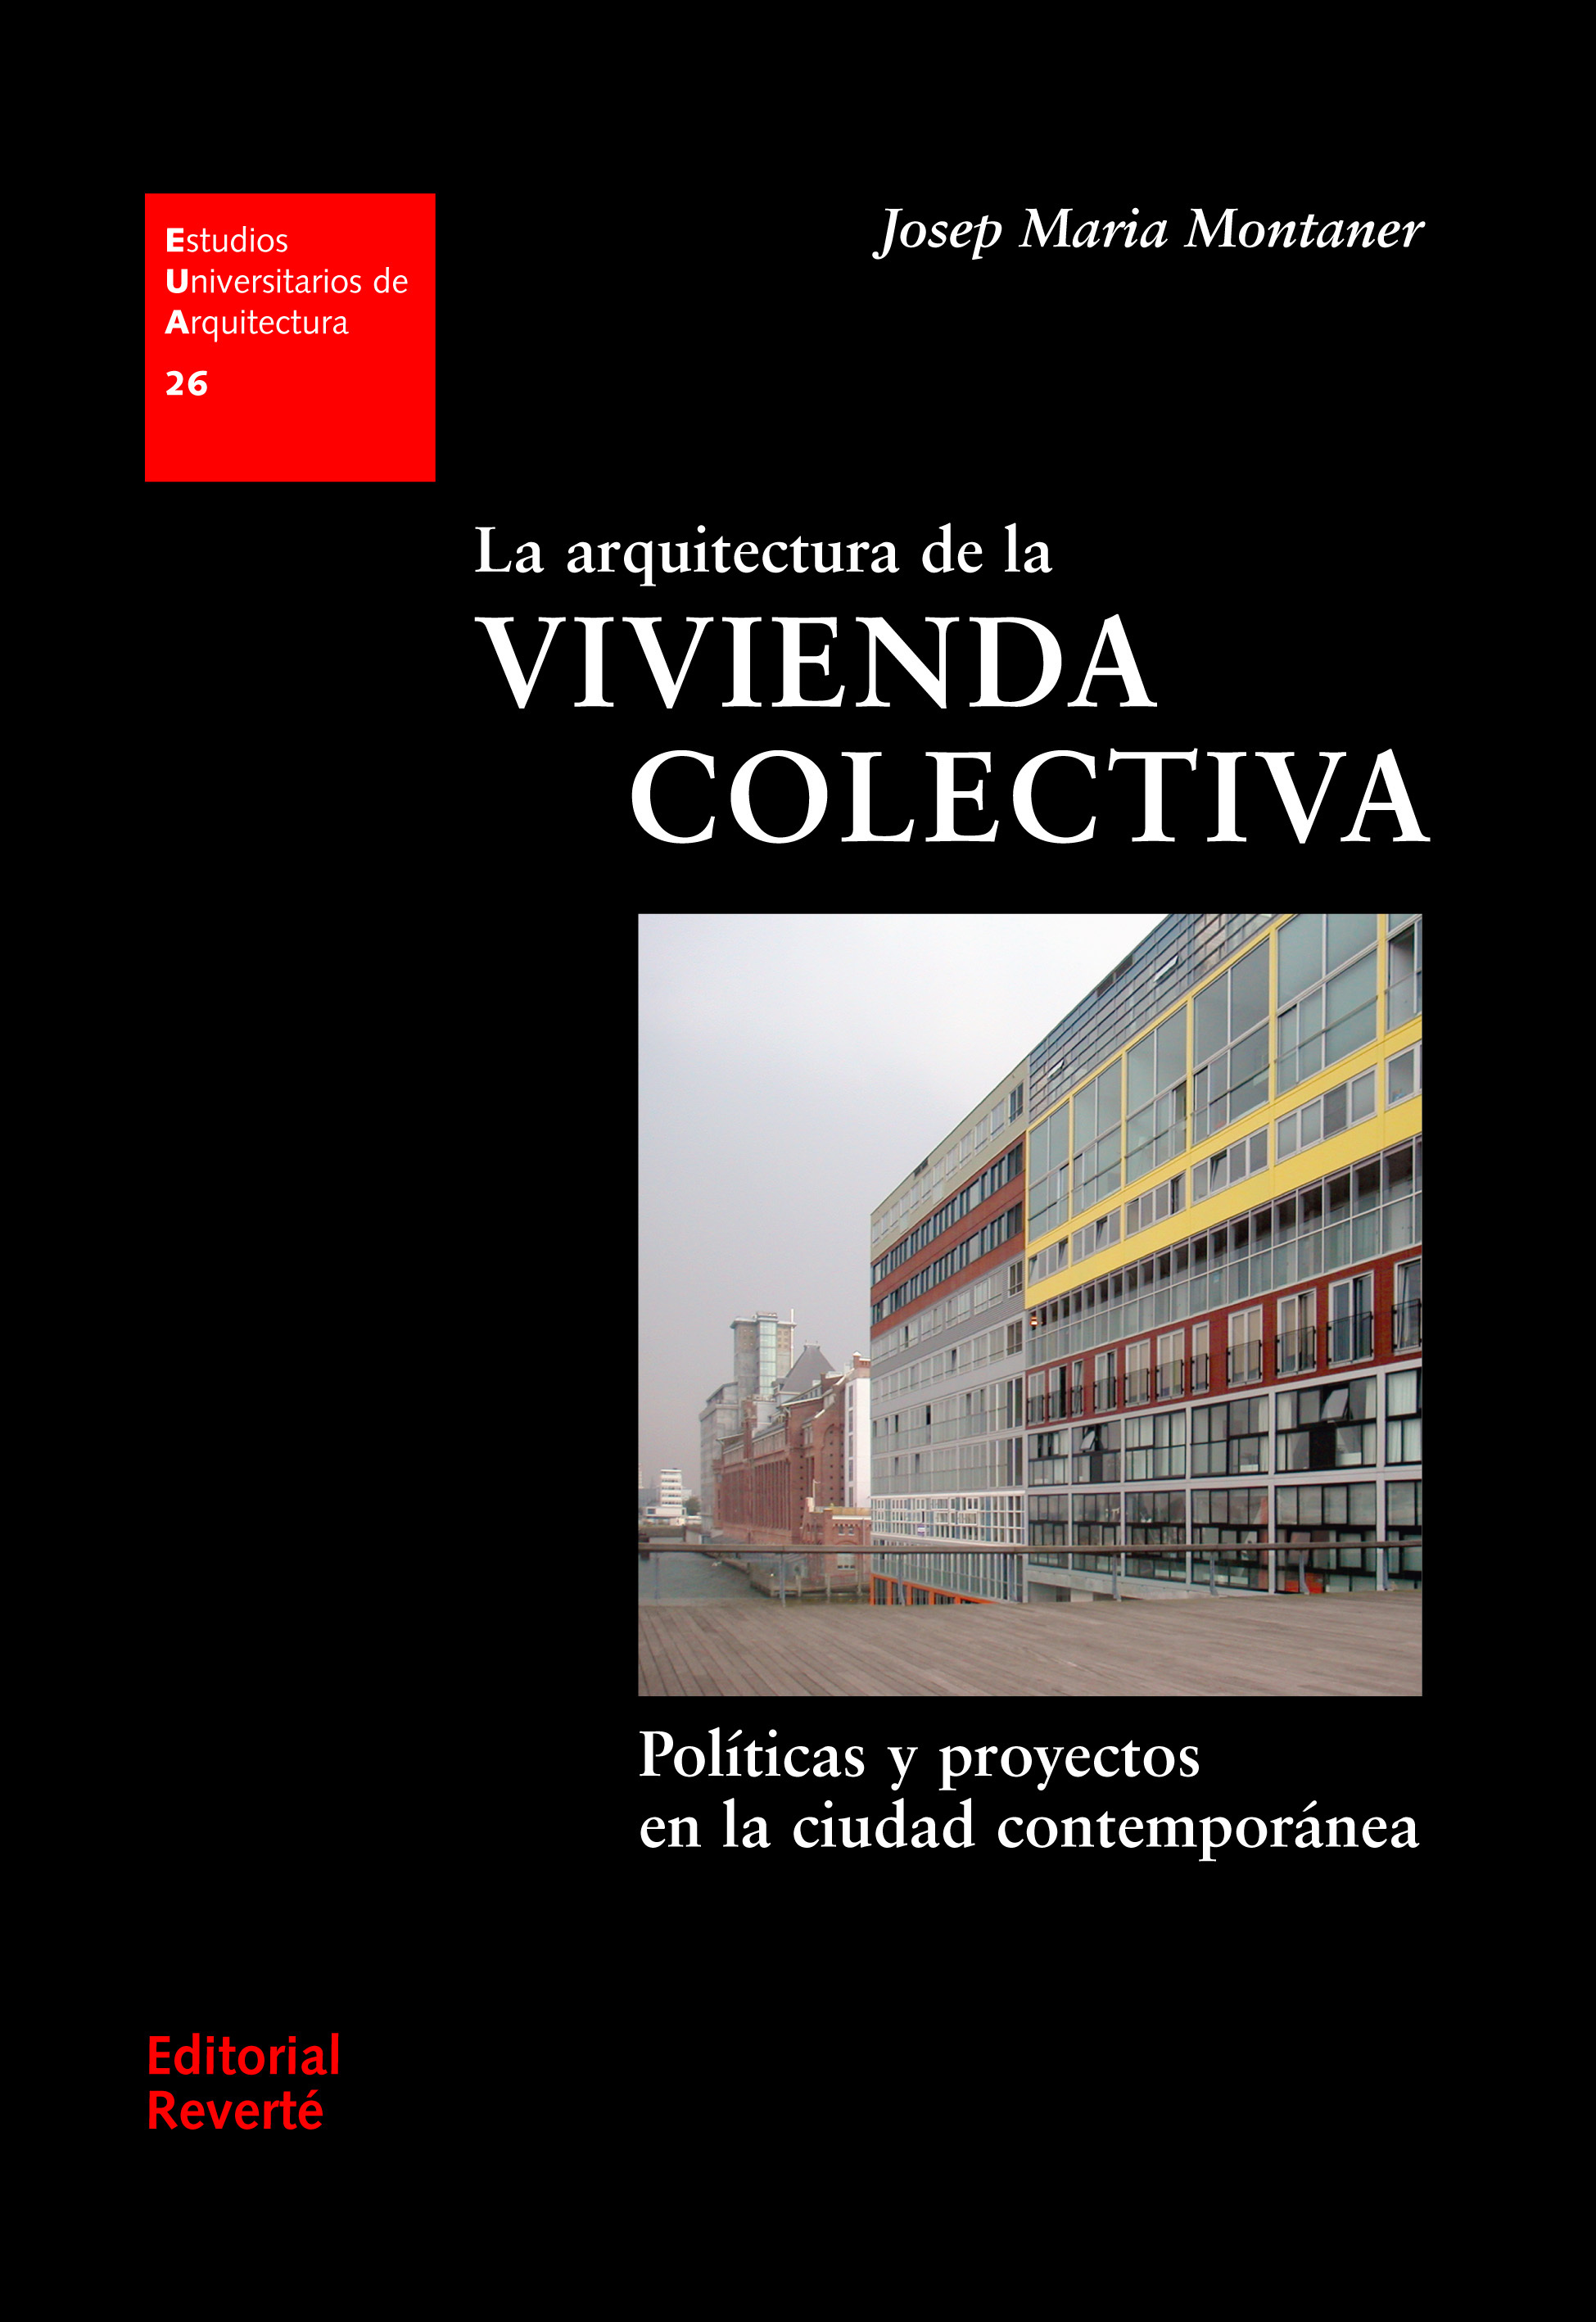 II CONGRESO INTERNACIONAL DE VIVIENDA COLECTIVA SOSTENIBLE - SAO PAULO by  laboratorio vivienda - Issuu